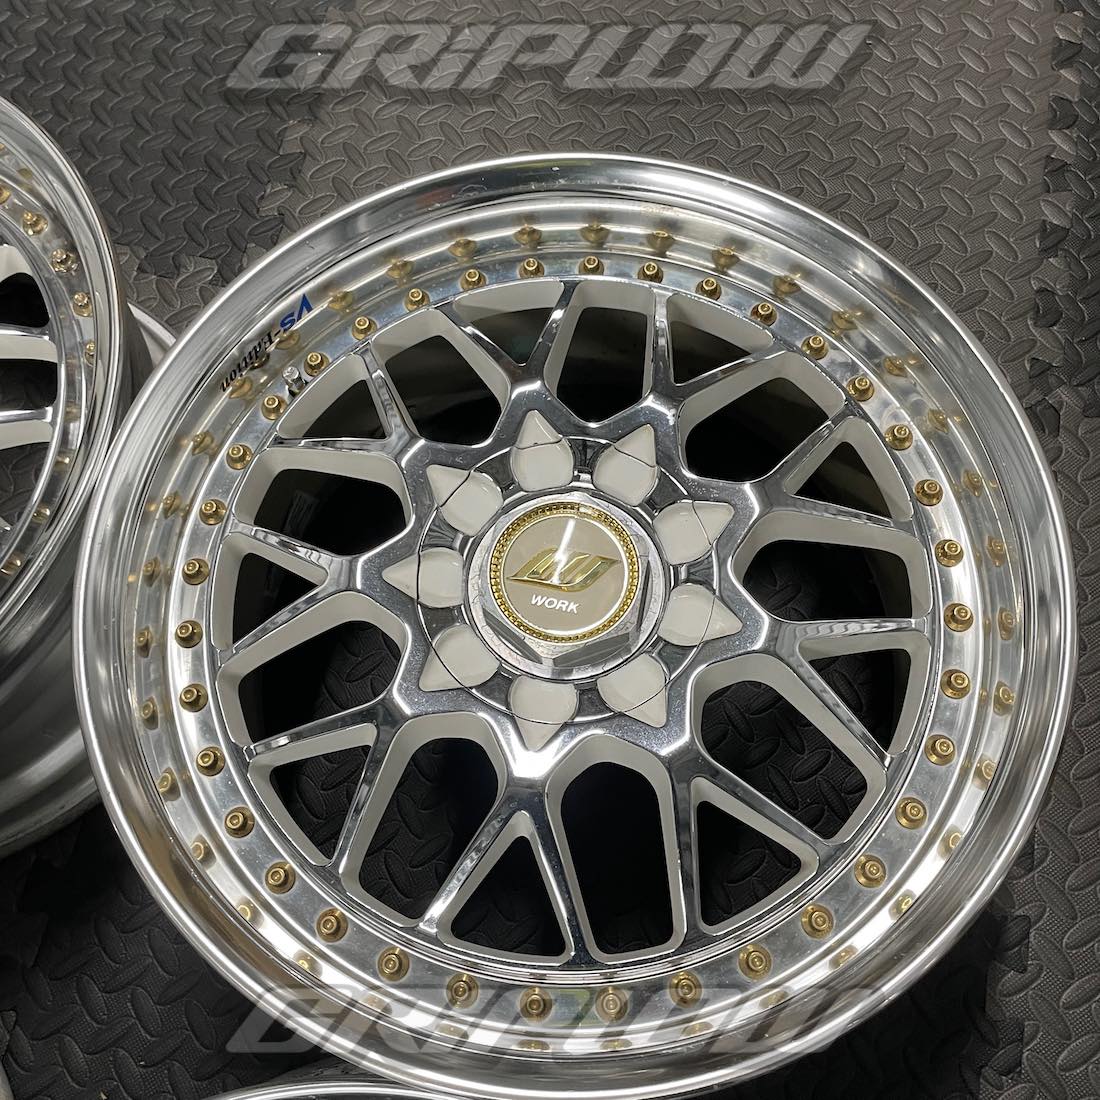 Griplow JDM Super Wheels